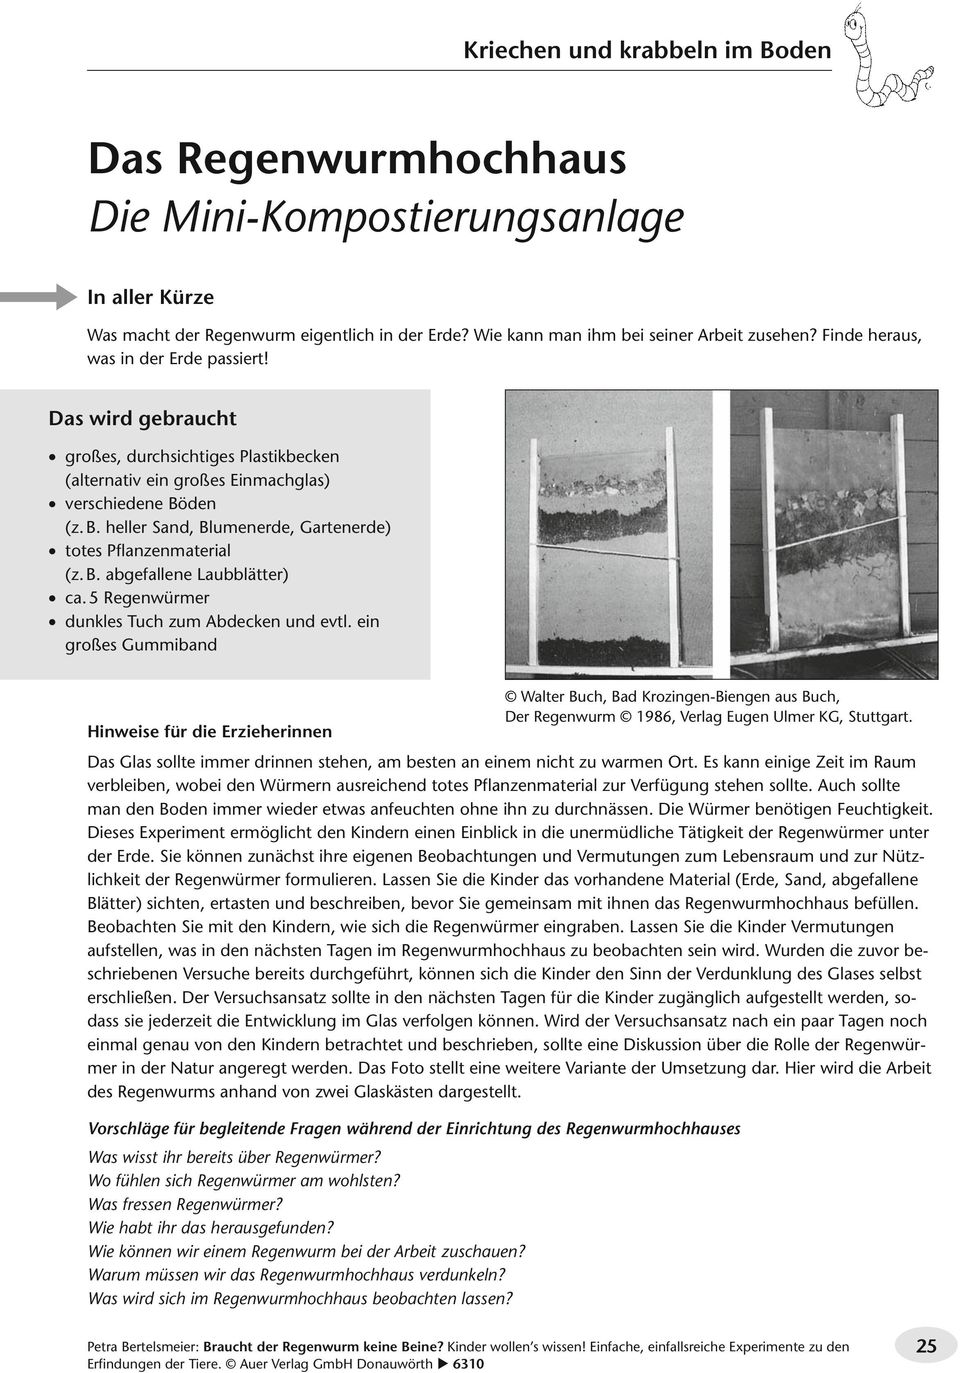 5 Regenwürmer dunkles Tuch zum Abdecken und evtl. ein großes Gummiband Hinweise für die Erzieherinnen Walter Buch, Bad Krozingen-Biengen aus Buch, Der Regenwurm 1986, Verlag Eugen Ulmer KG, Stuttgart.